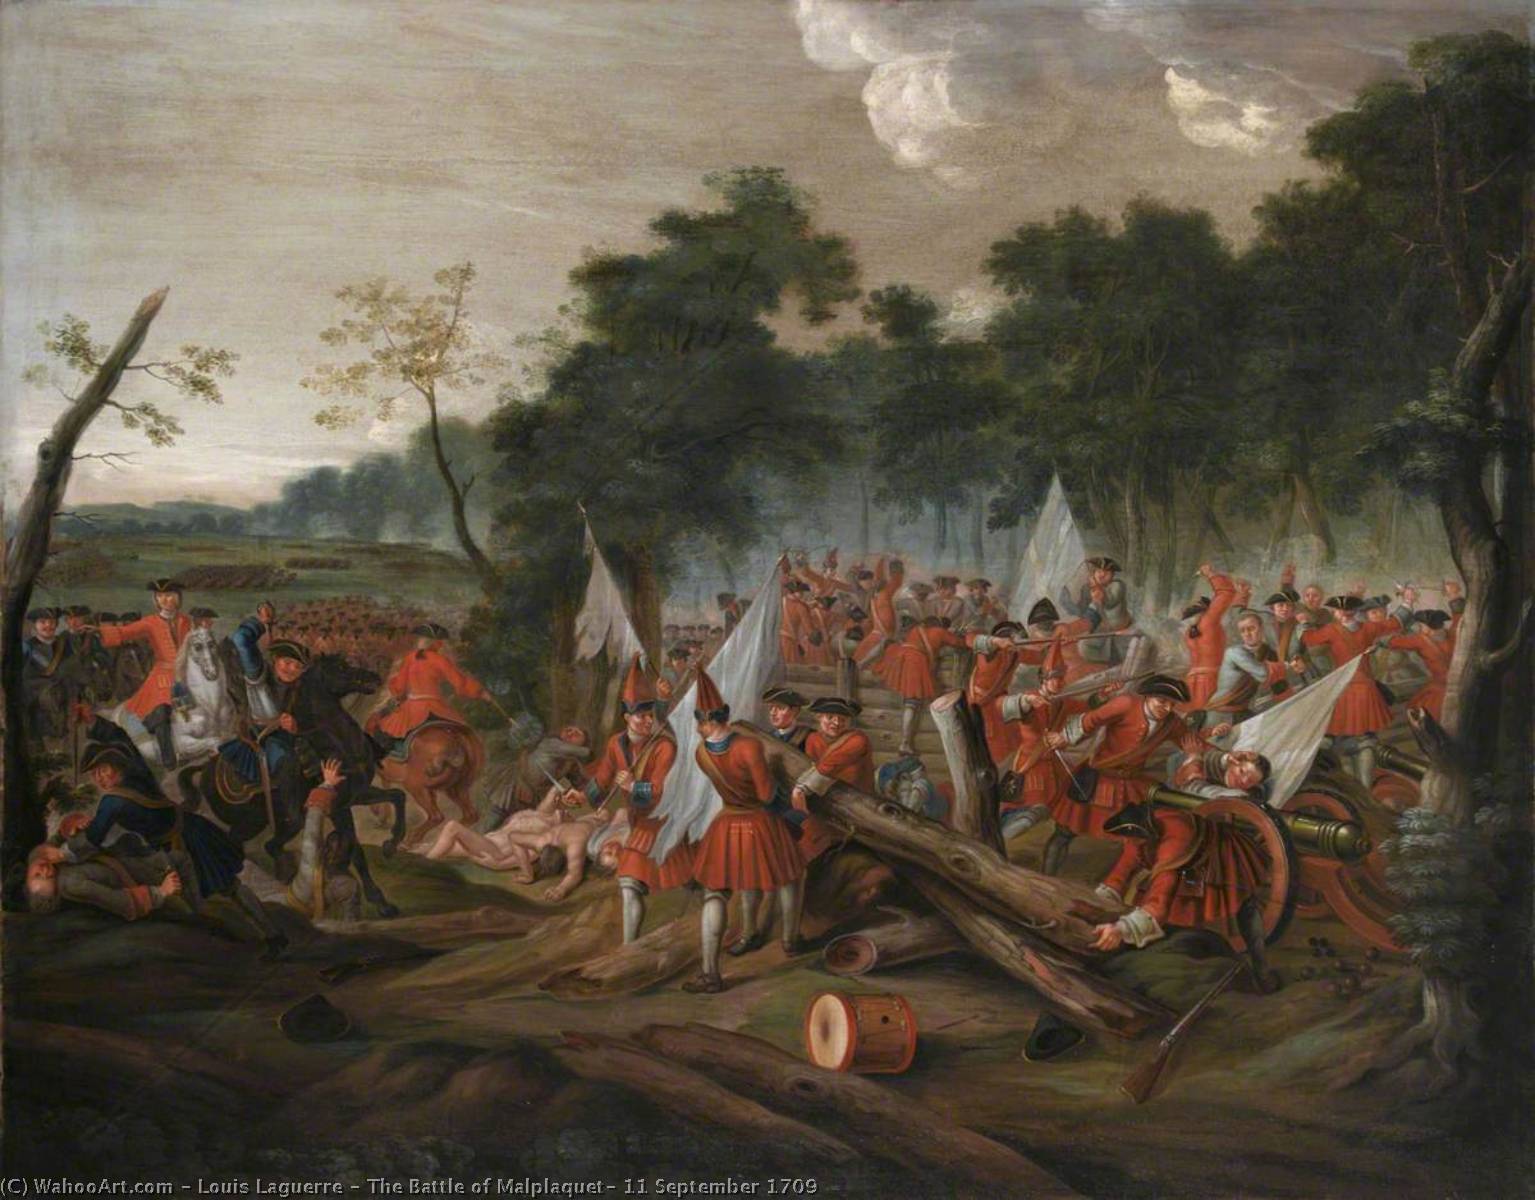 Achat Réplique De Peinture La bataille de Malplaquet, le 11 septembre 1709, 1713 de Louis Laguerre (1663-1721) | ArtsDot.com